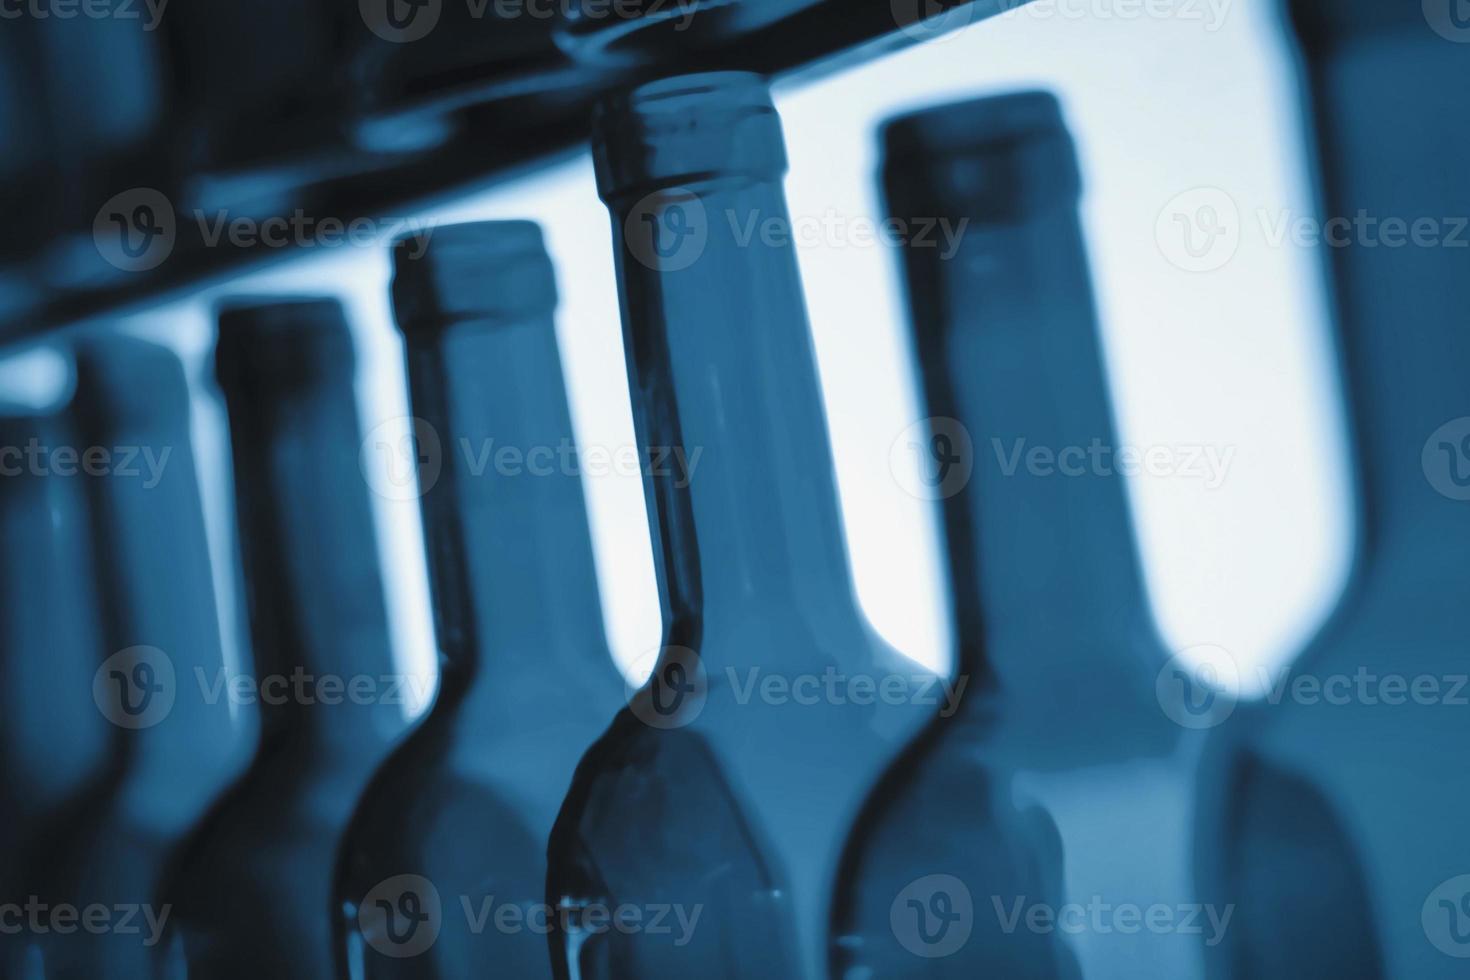 leeg wijn fles nekken in een rij net zo illustratie van eetbui of probleem drinken en depressie veroorzaakt door alcohol verslaving foto